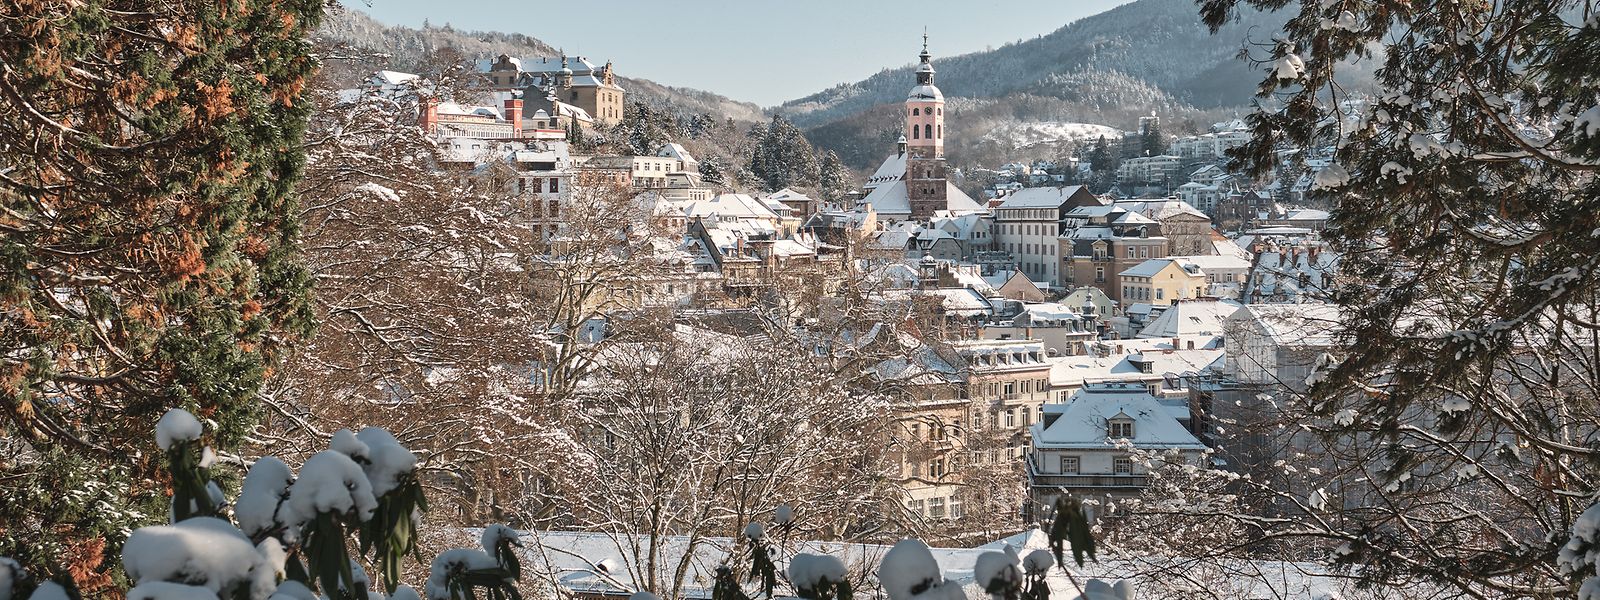 Schneelandschaft: das winterliche Baden-Baden mit der Stiftskirche im Zentrum.  

